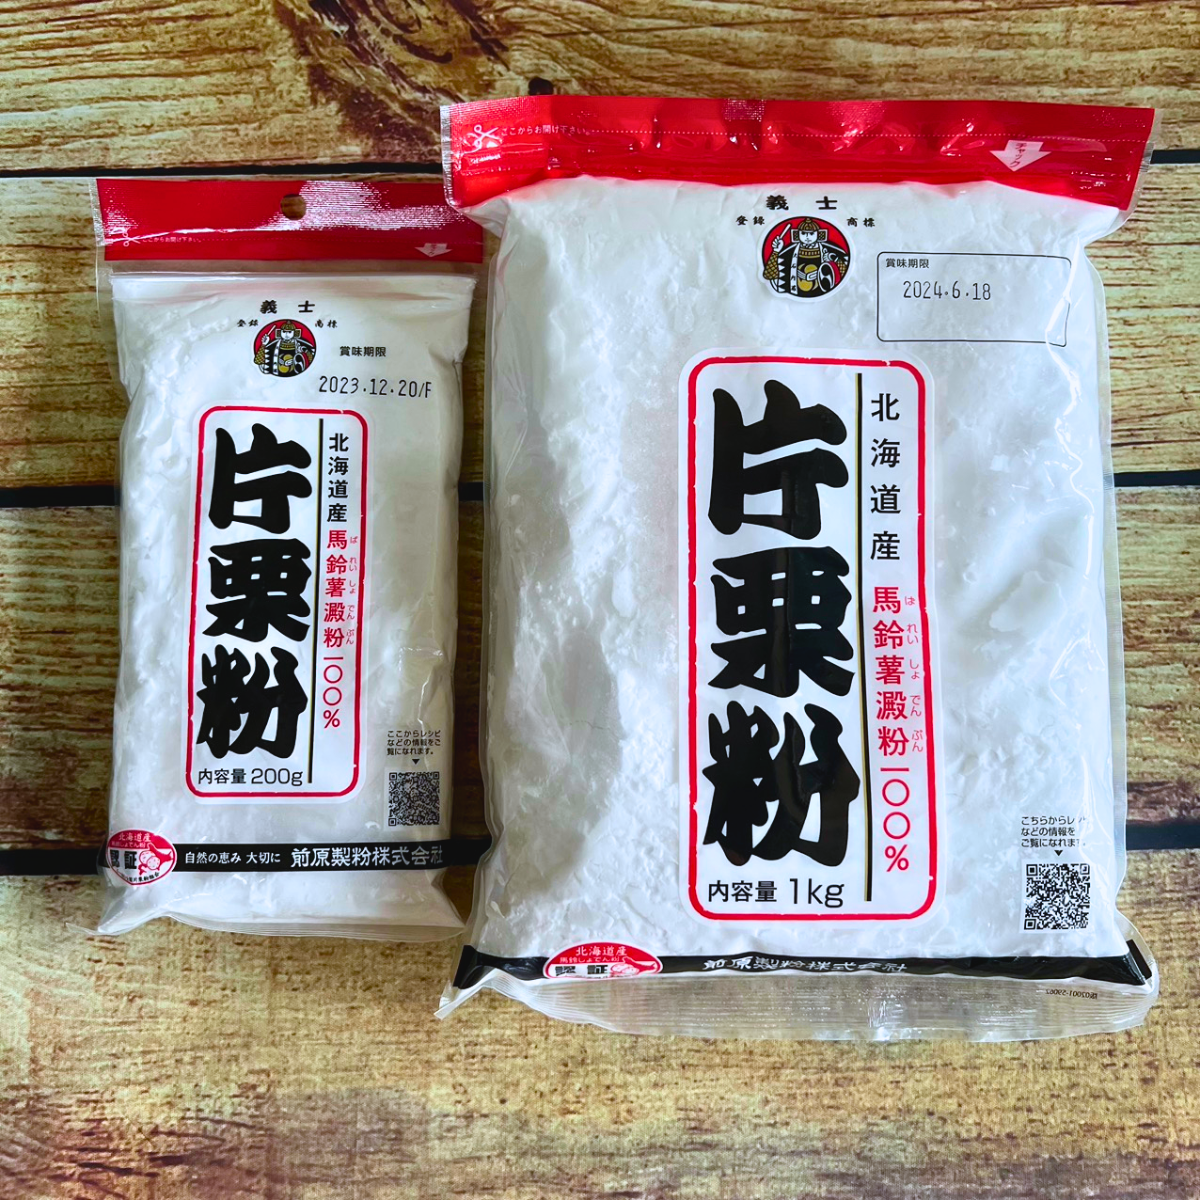 Tinh bột khoai tây nguyên chất Katakuriko Nhật Bản loại 1KG Chuyên dùng